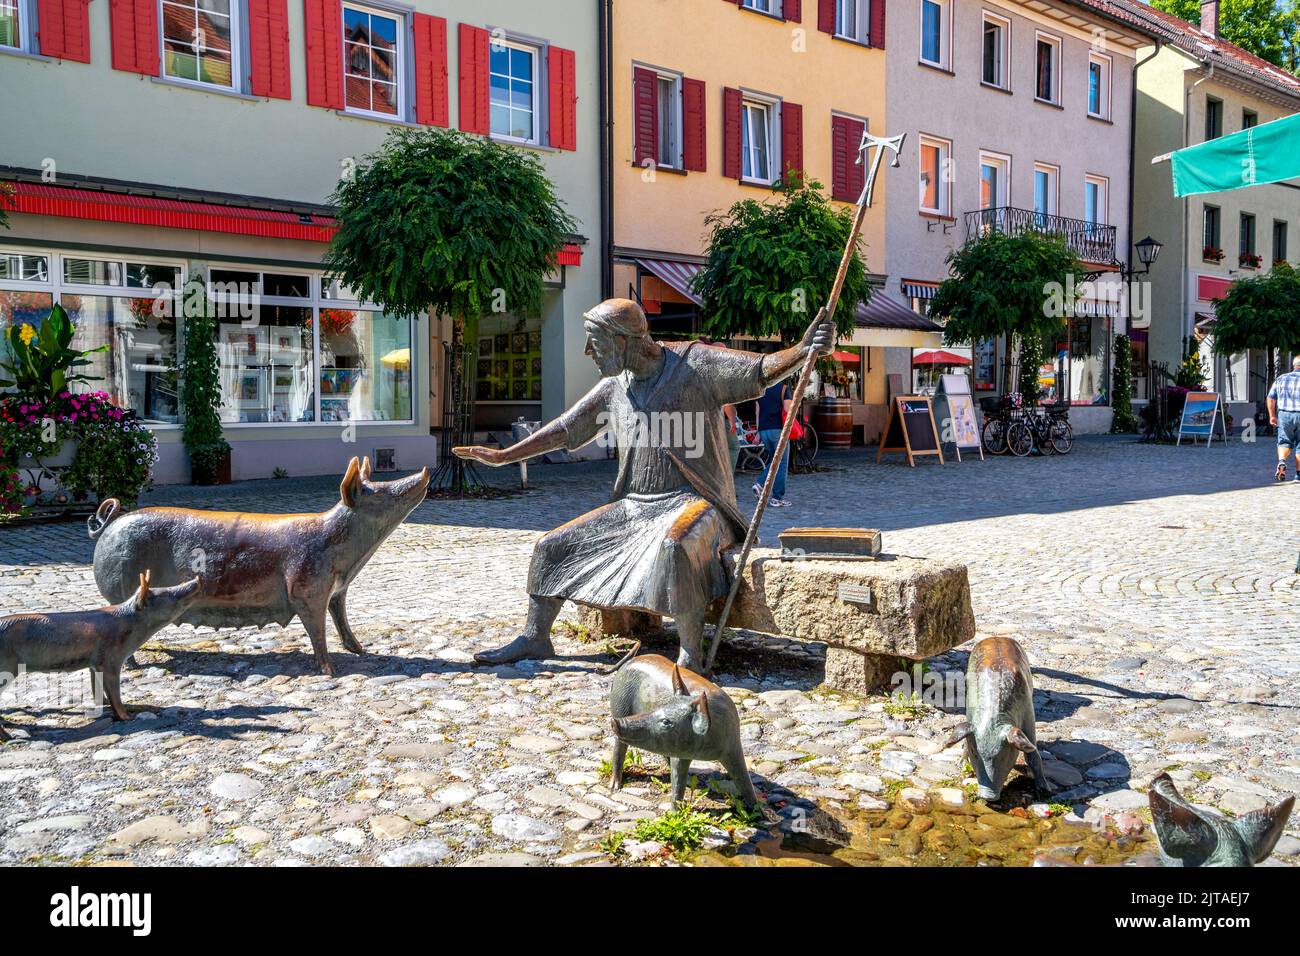 Ville historique de Wangen im Allgaeu, Allemagne Banque D'Images